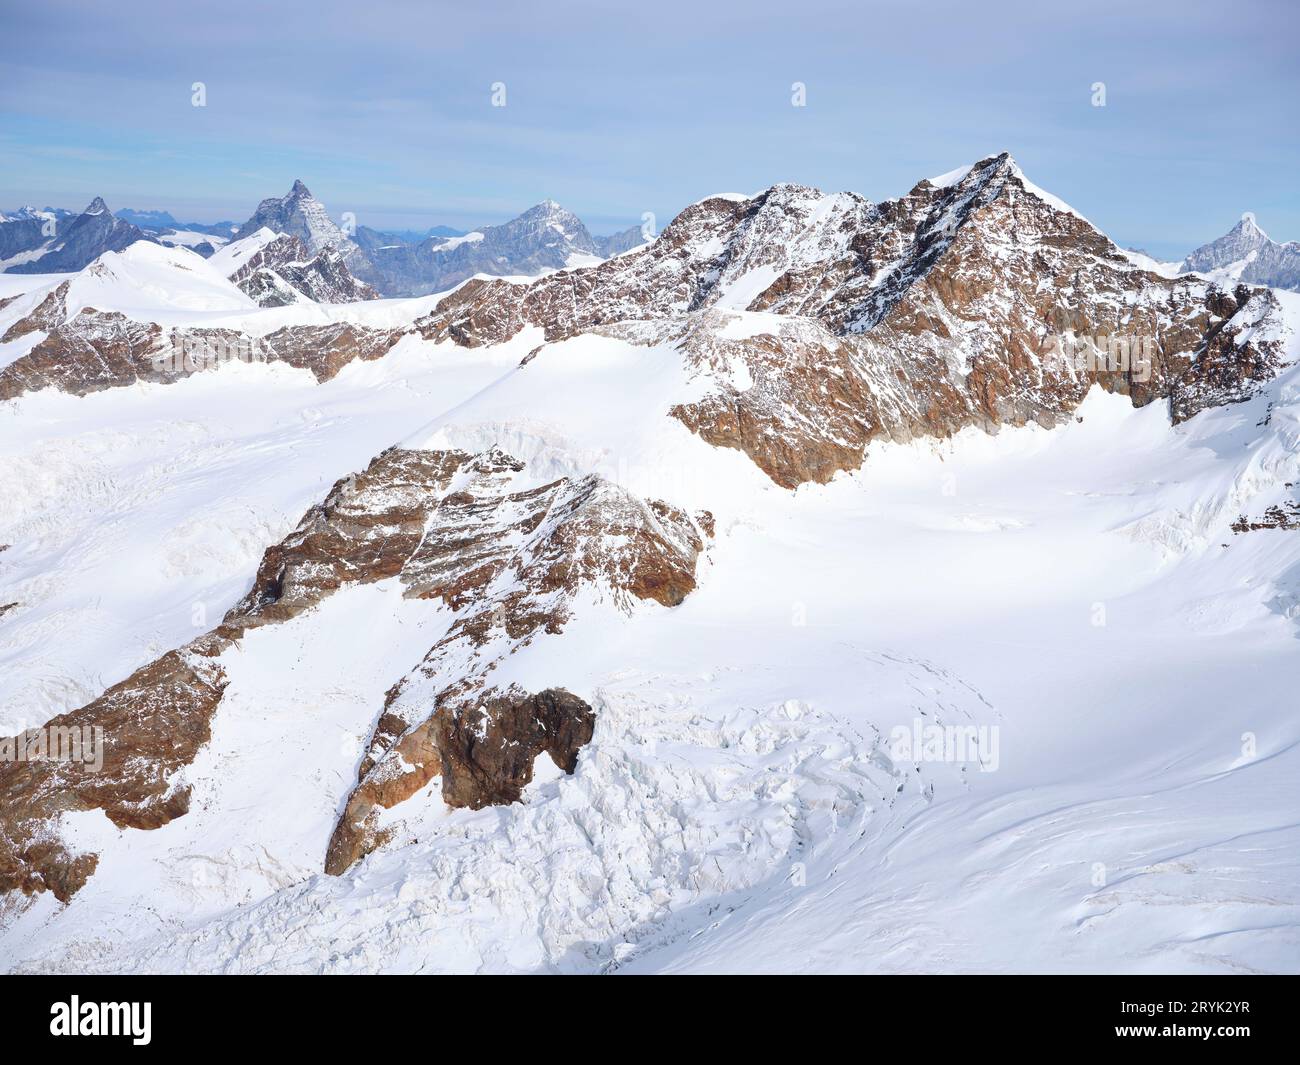 LUFTAUFNAHME. Italienische Seite des Lyskamms (Höhe: 4533 m ü.d.M.) auf dem Monte Rosa Massiv. Aostatal, Italien. Stockfoto